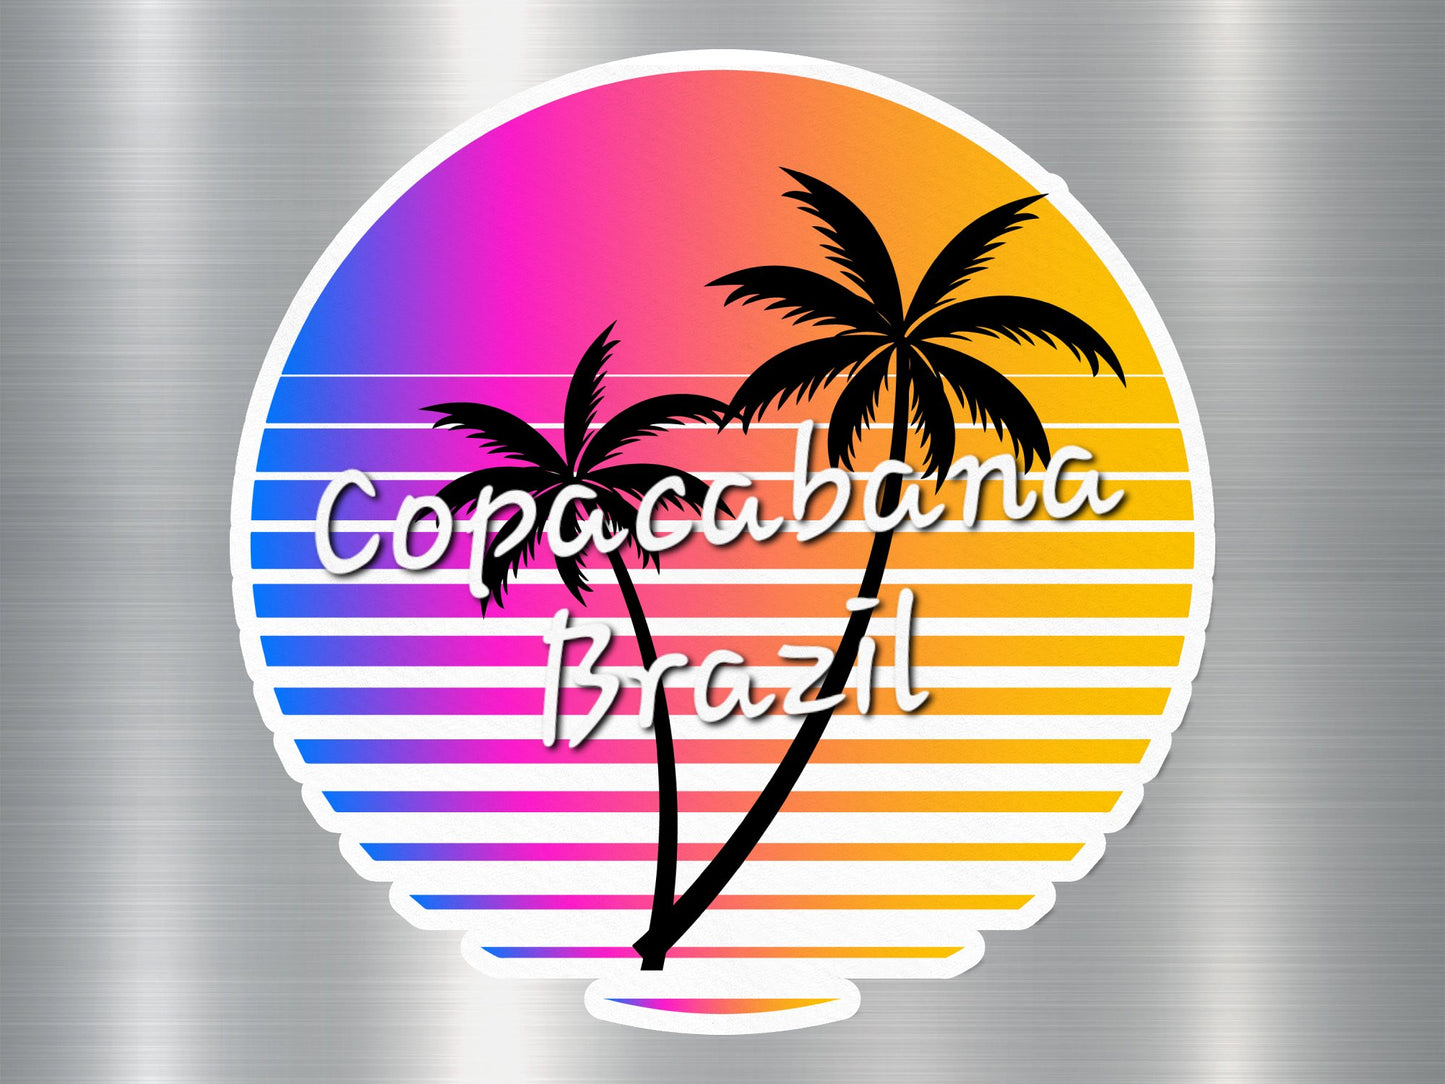 Copacabana Brazil Beach Sticker